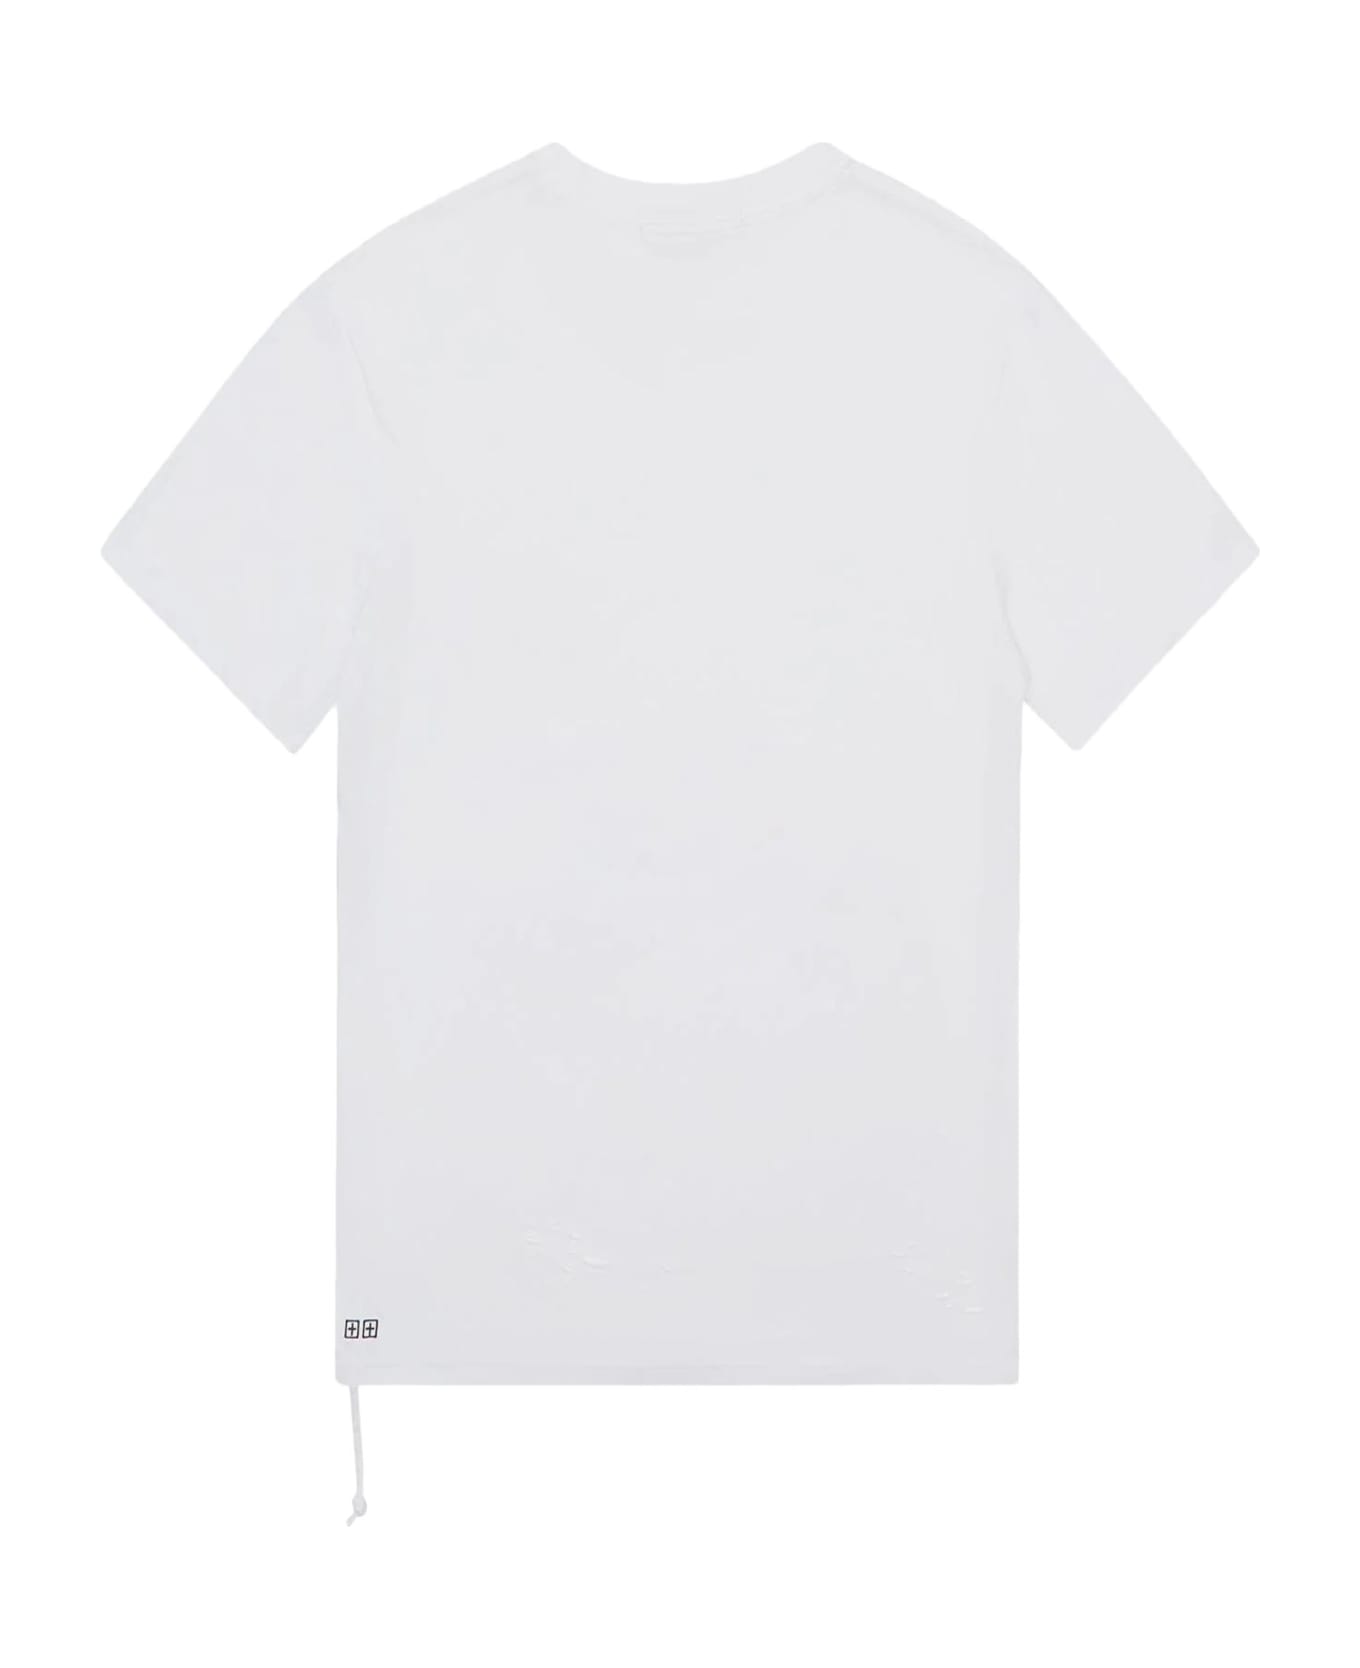 Ksubi T-shirts And Polos White - White